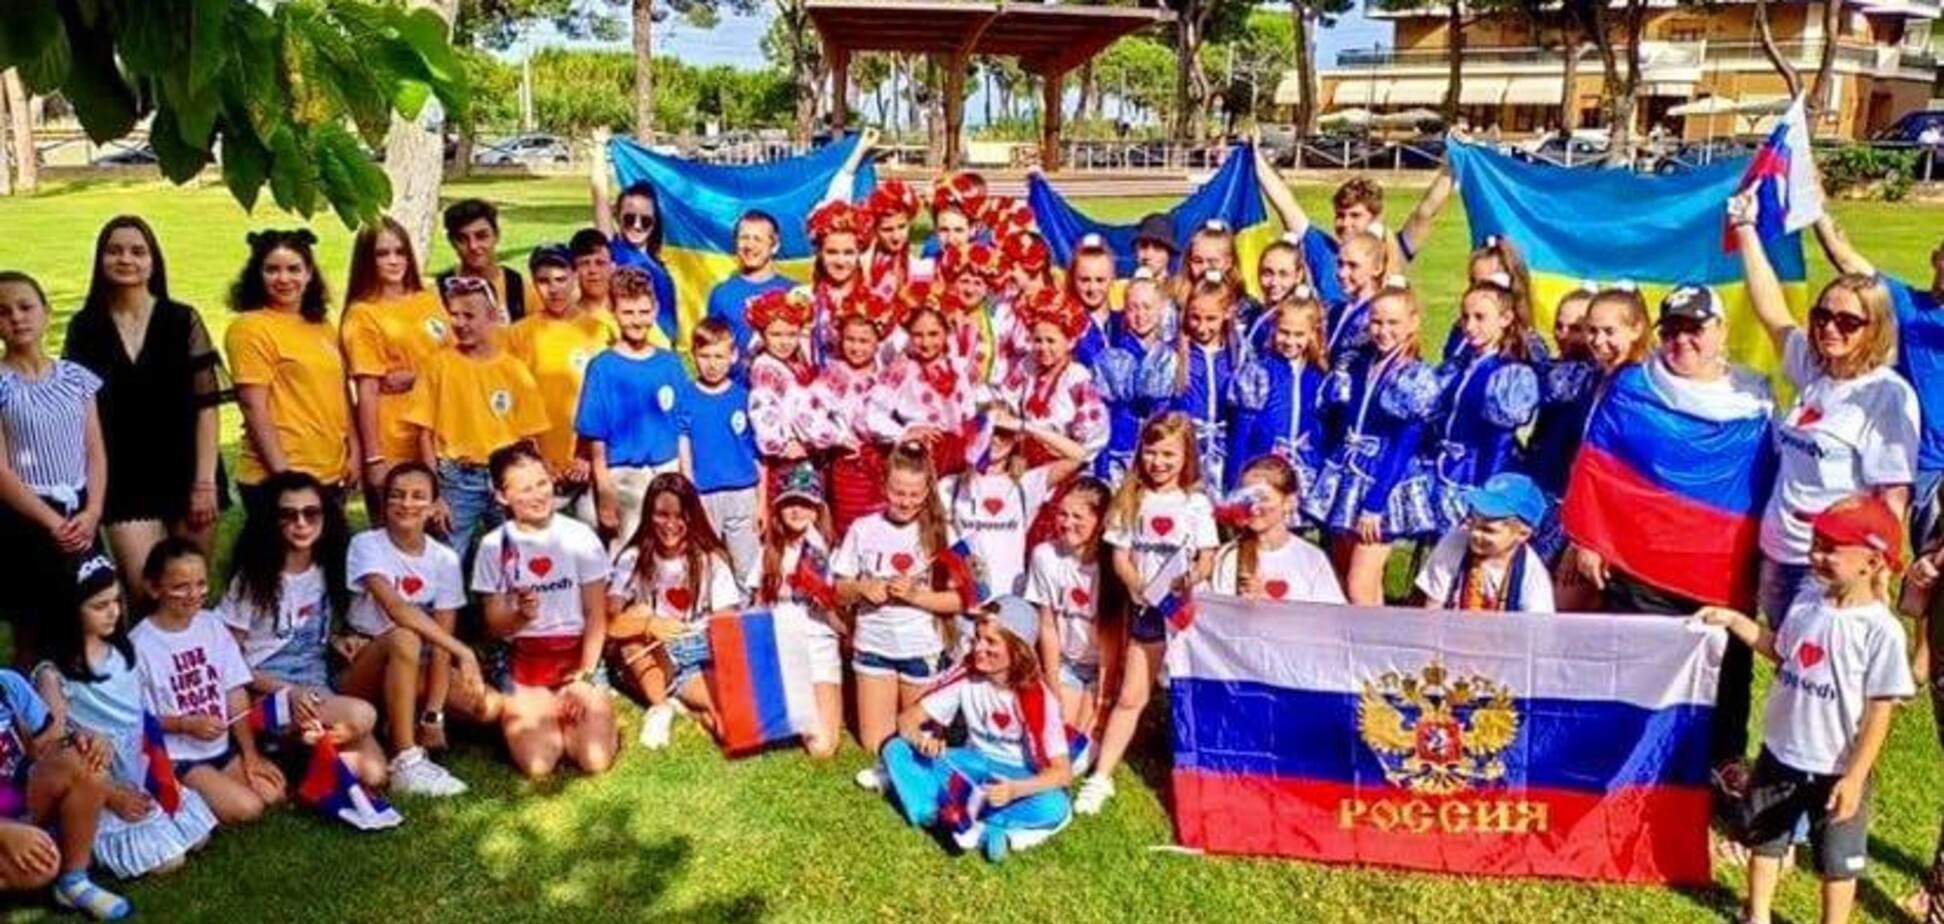 В сети разгорелся скандал из-за фото украинских детей возле флага России